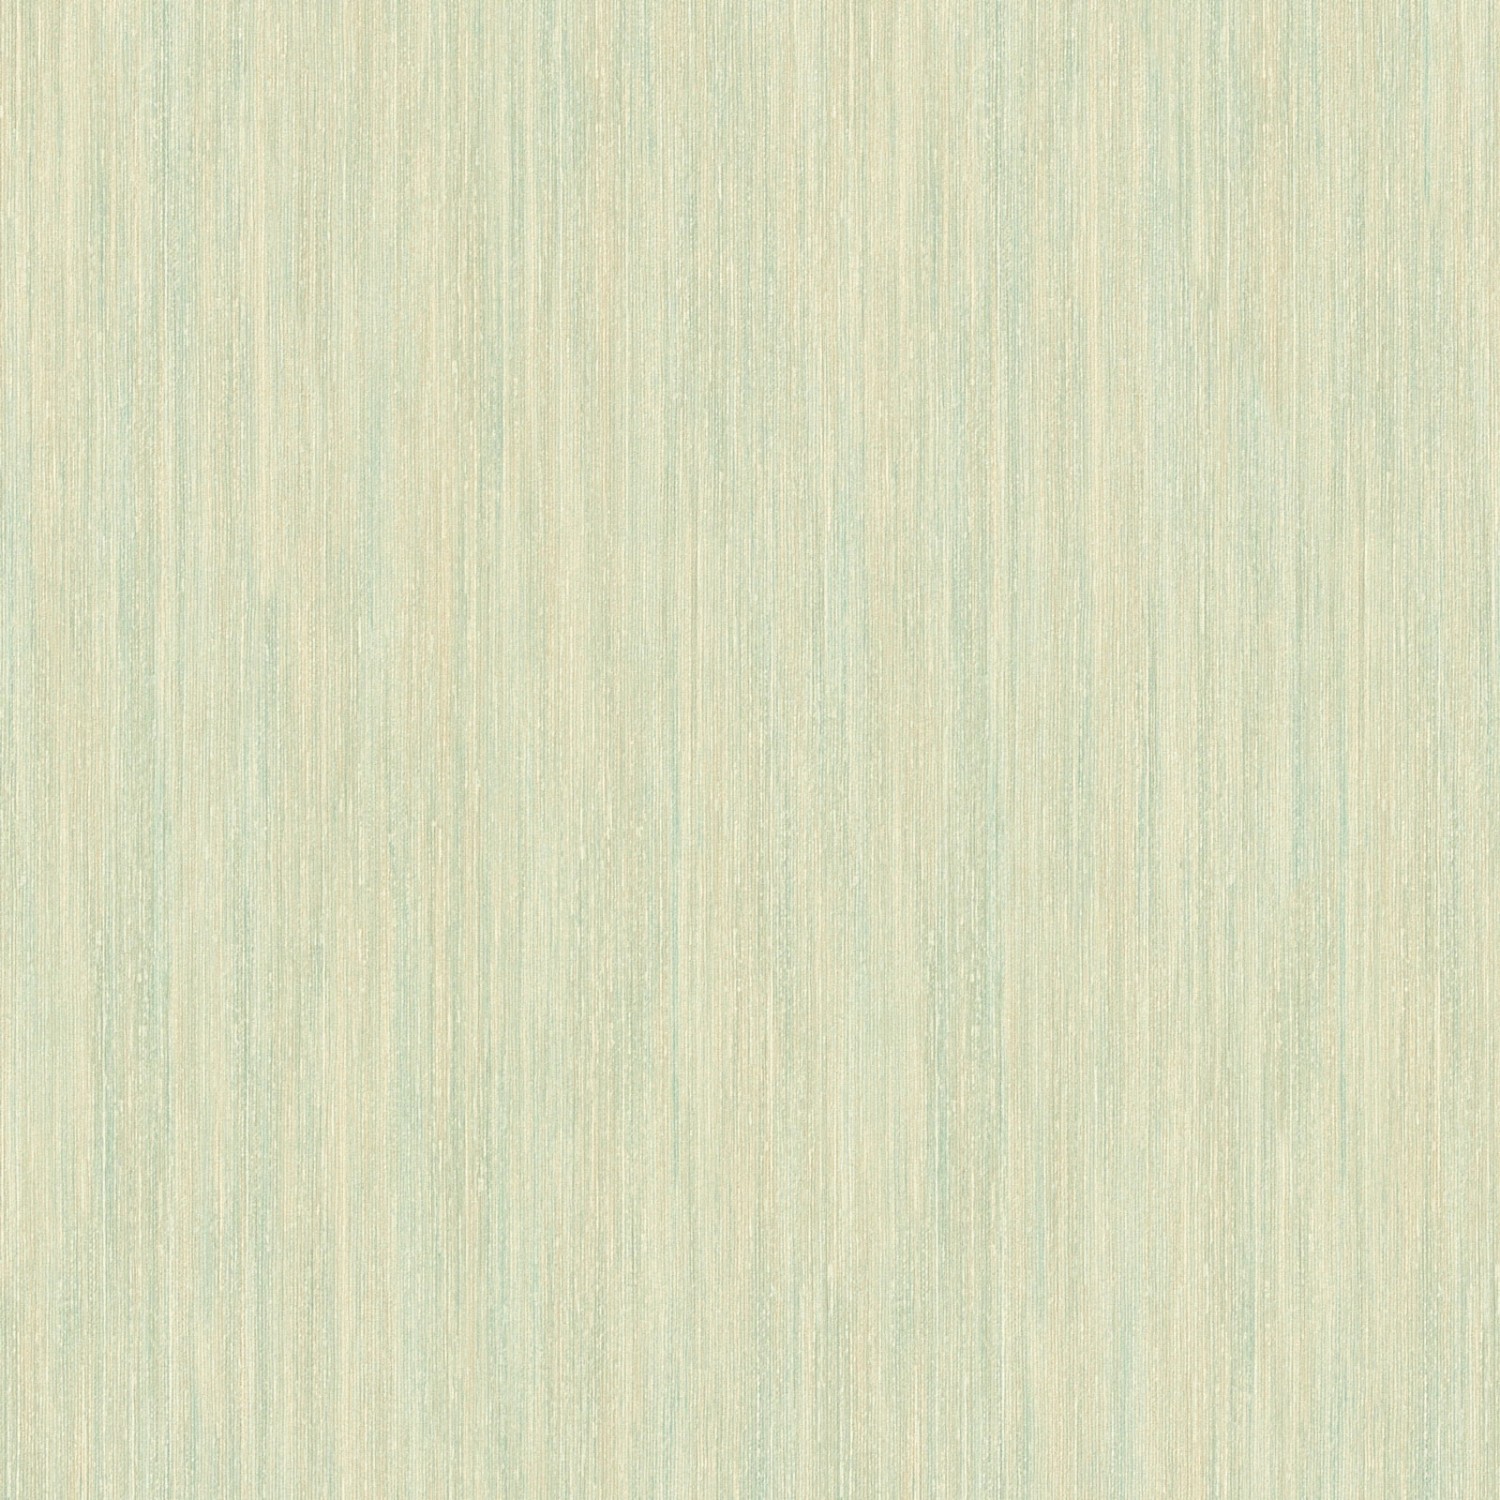 Bricoflor Uni Vliestapete in Mint Hellgrün Einfarbige Tapete Pastellfarben mit Vinyl Dezent für Ess und Schlafzimmer Grü